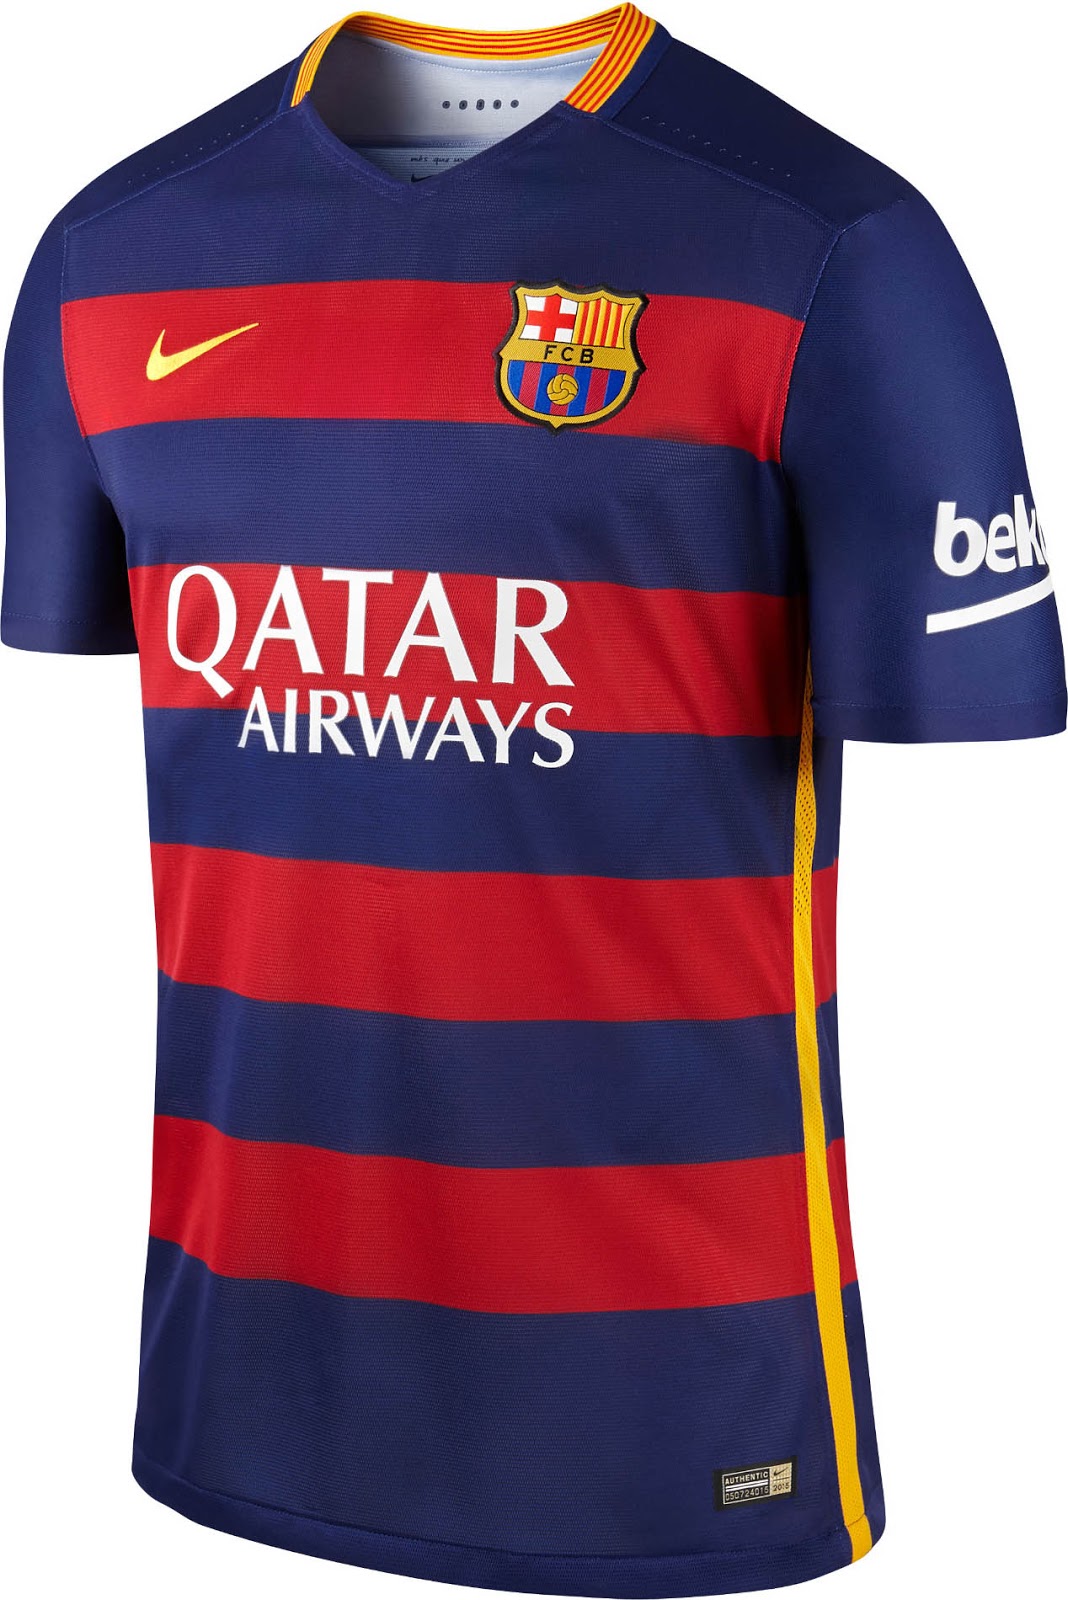 roekeloos verkopen Landelijk Revolutionary FC Barcelona 15-16 Kits Released - Footy Headlines